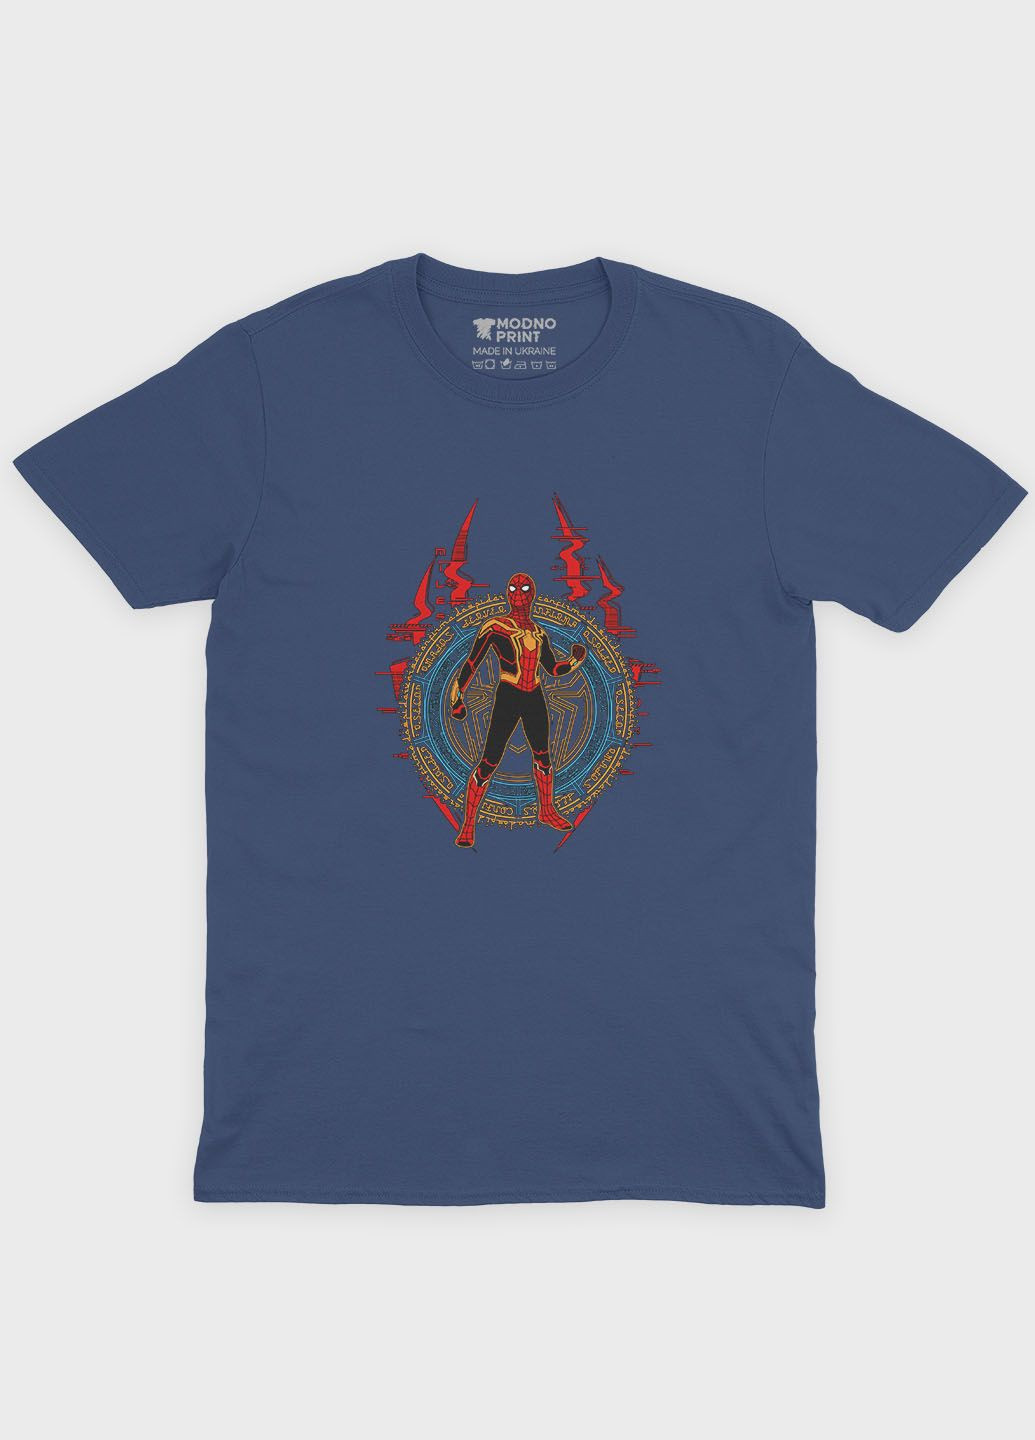 Темно-синяя демисезонная футболка для мальчика с принтом супергероя - человек-паук (ts001-1-nav-006-014-011-b) Modno